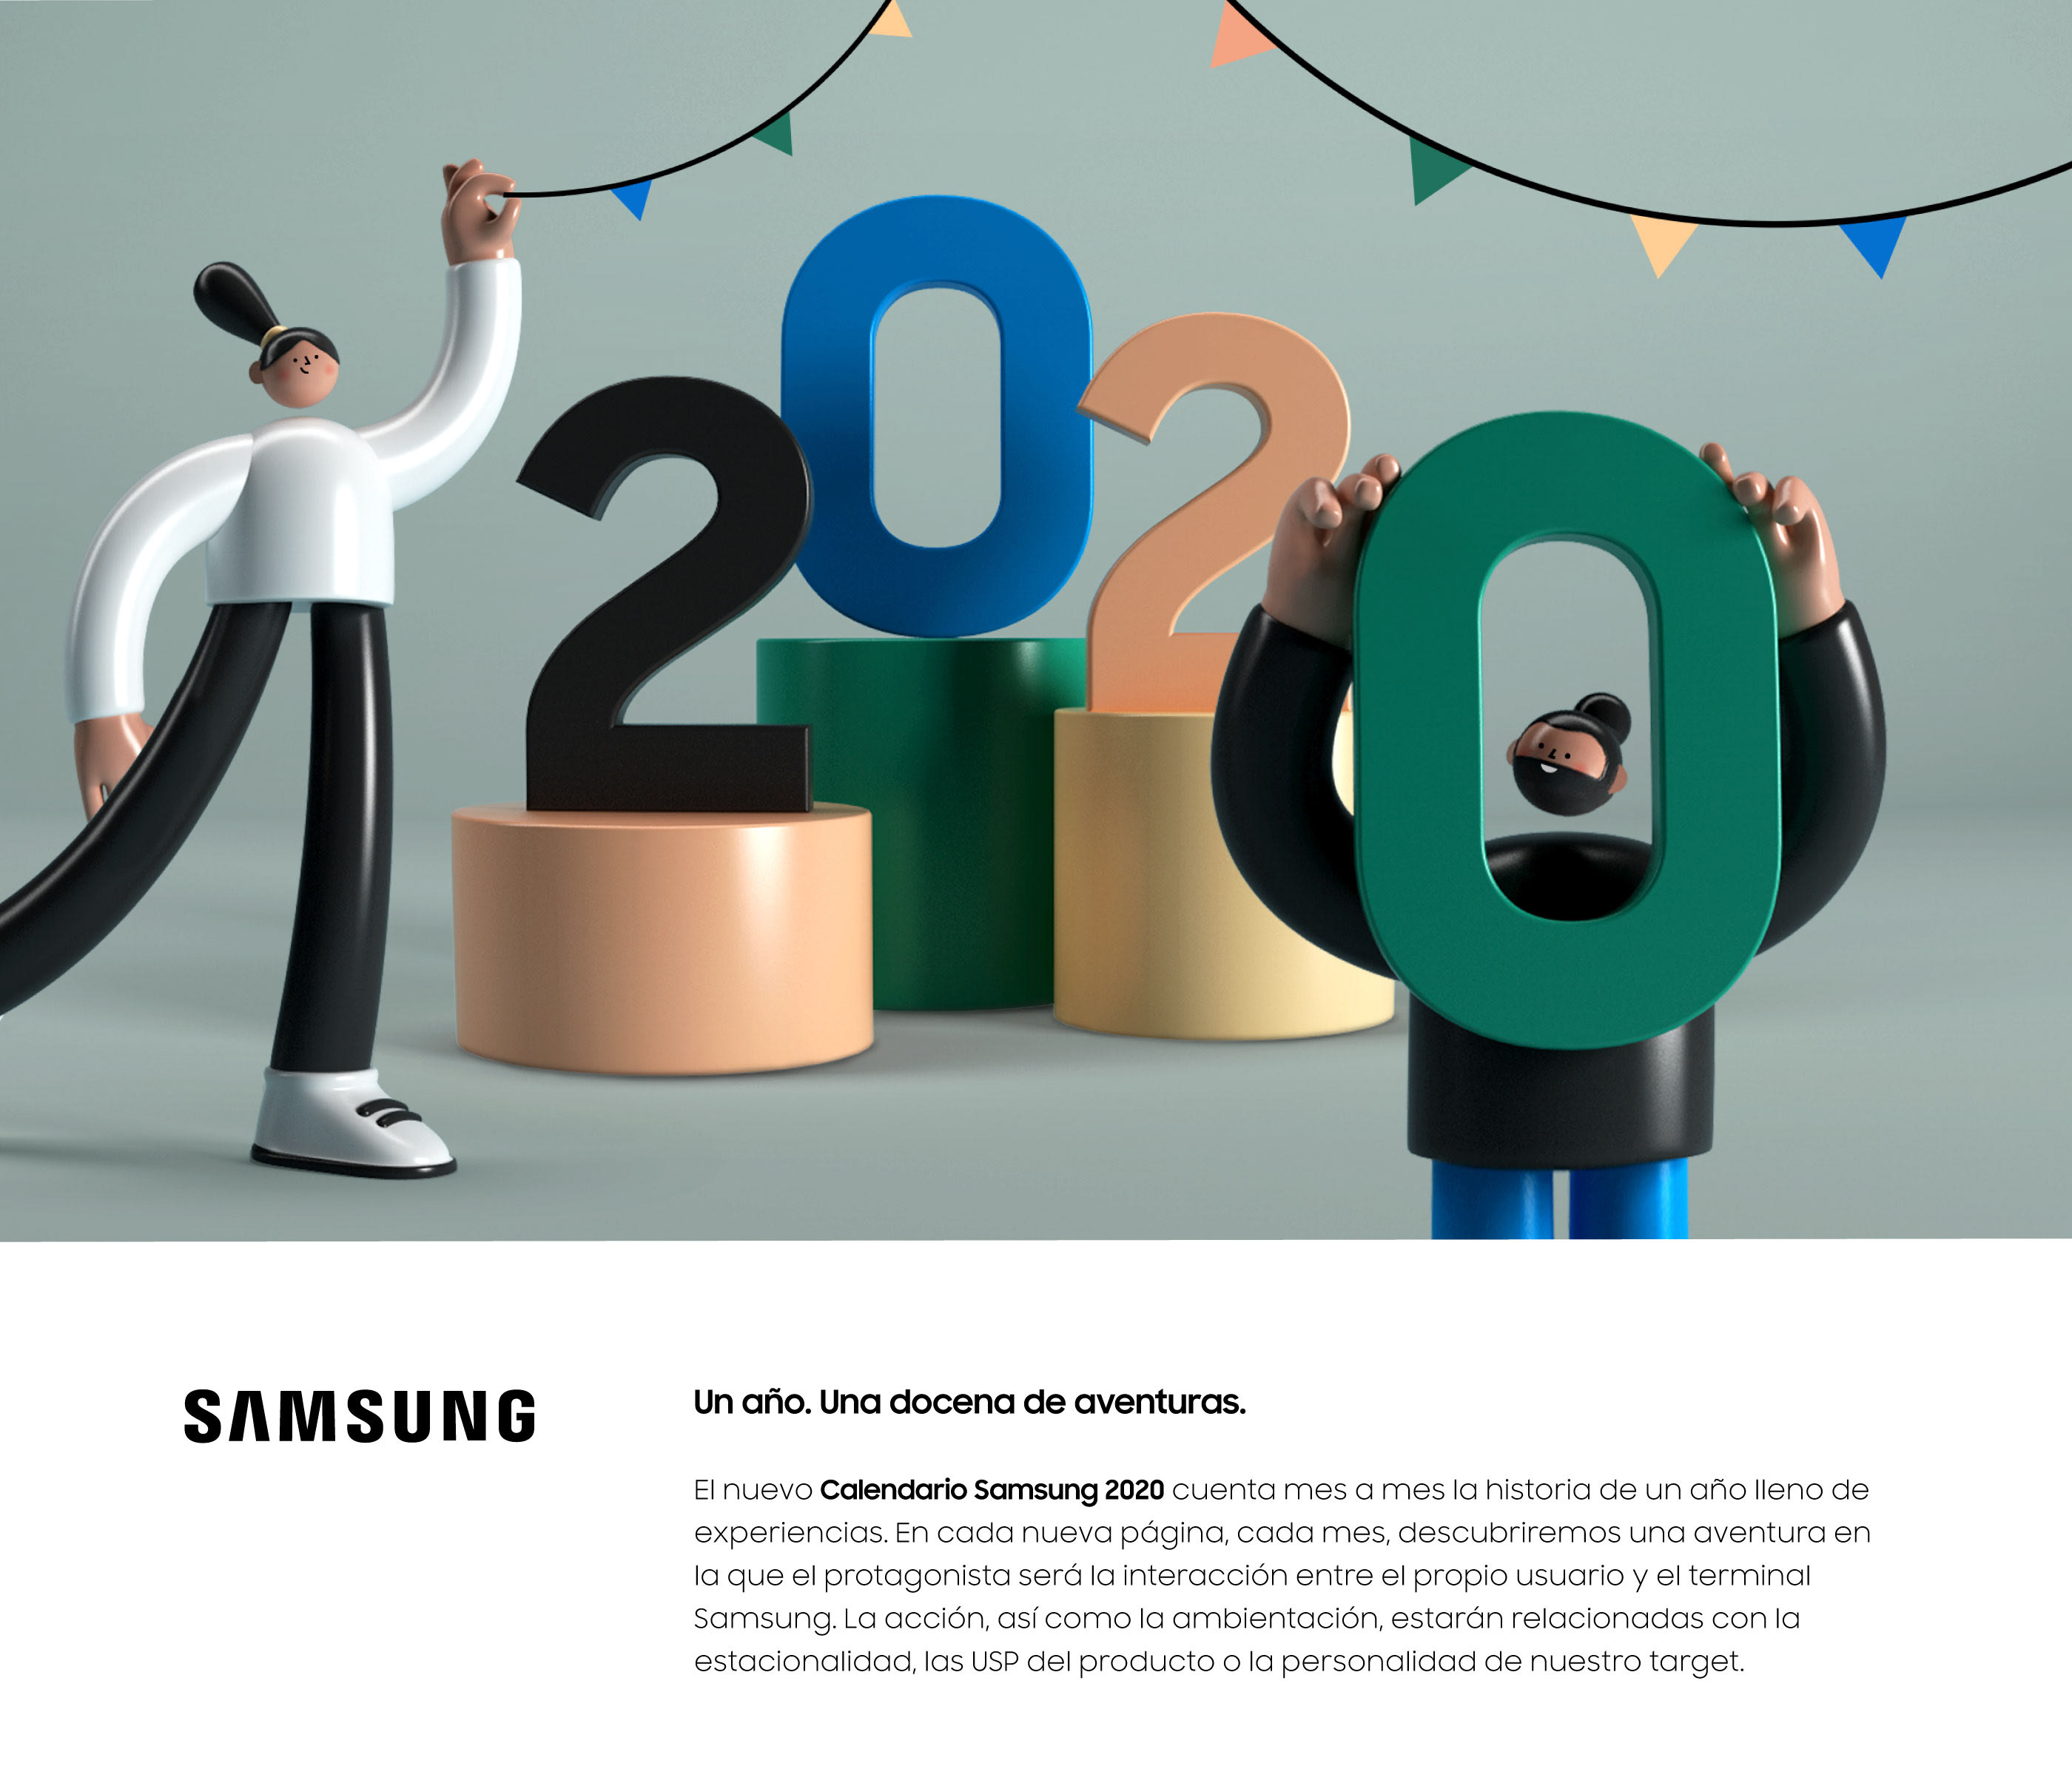 Samsung - Calendario 2020 on Behance21193490486651.5e1871c03cb8a.jpg